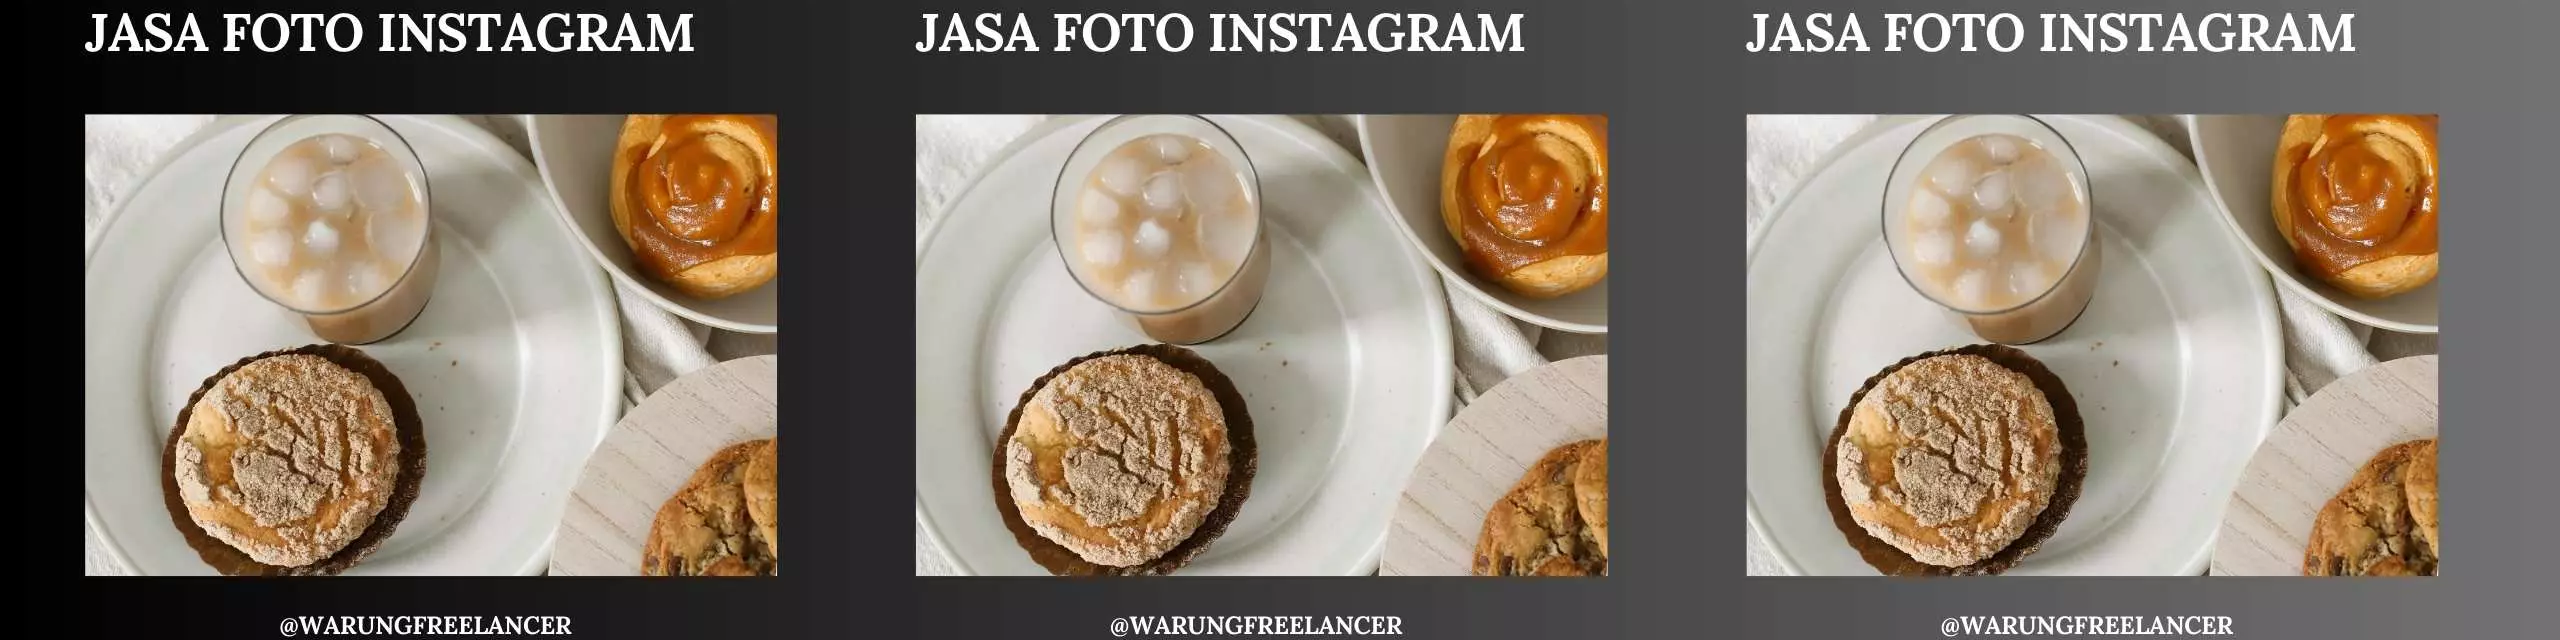 Jasa Foto Instagram